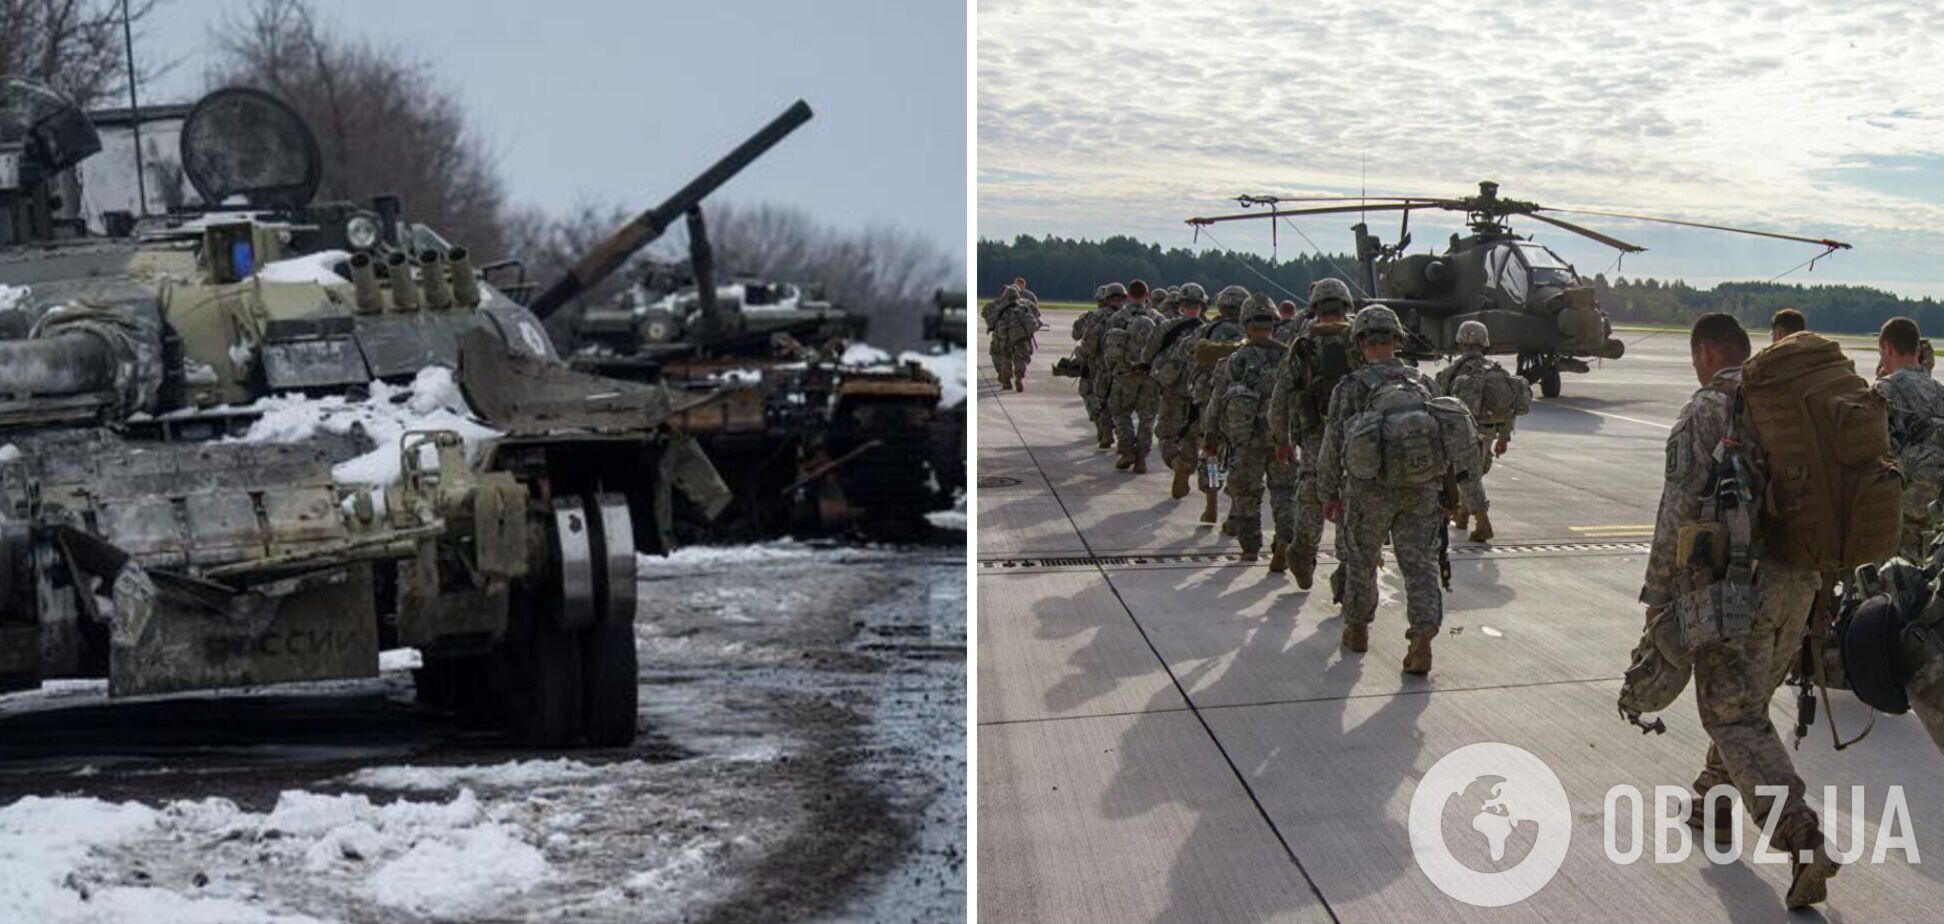 'В полку было 900 человек, 300 осталось': оккупант признался, что армия Путина хочет бежать домой. Аудио